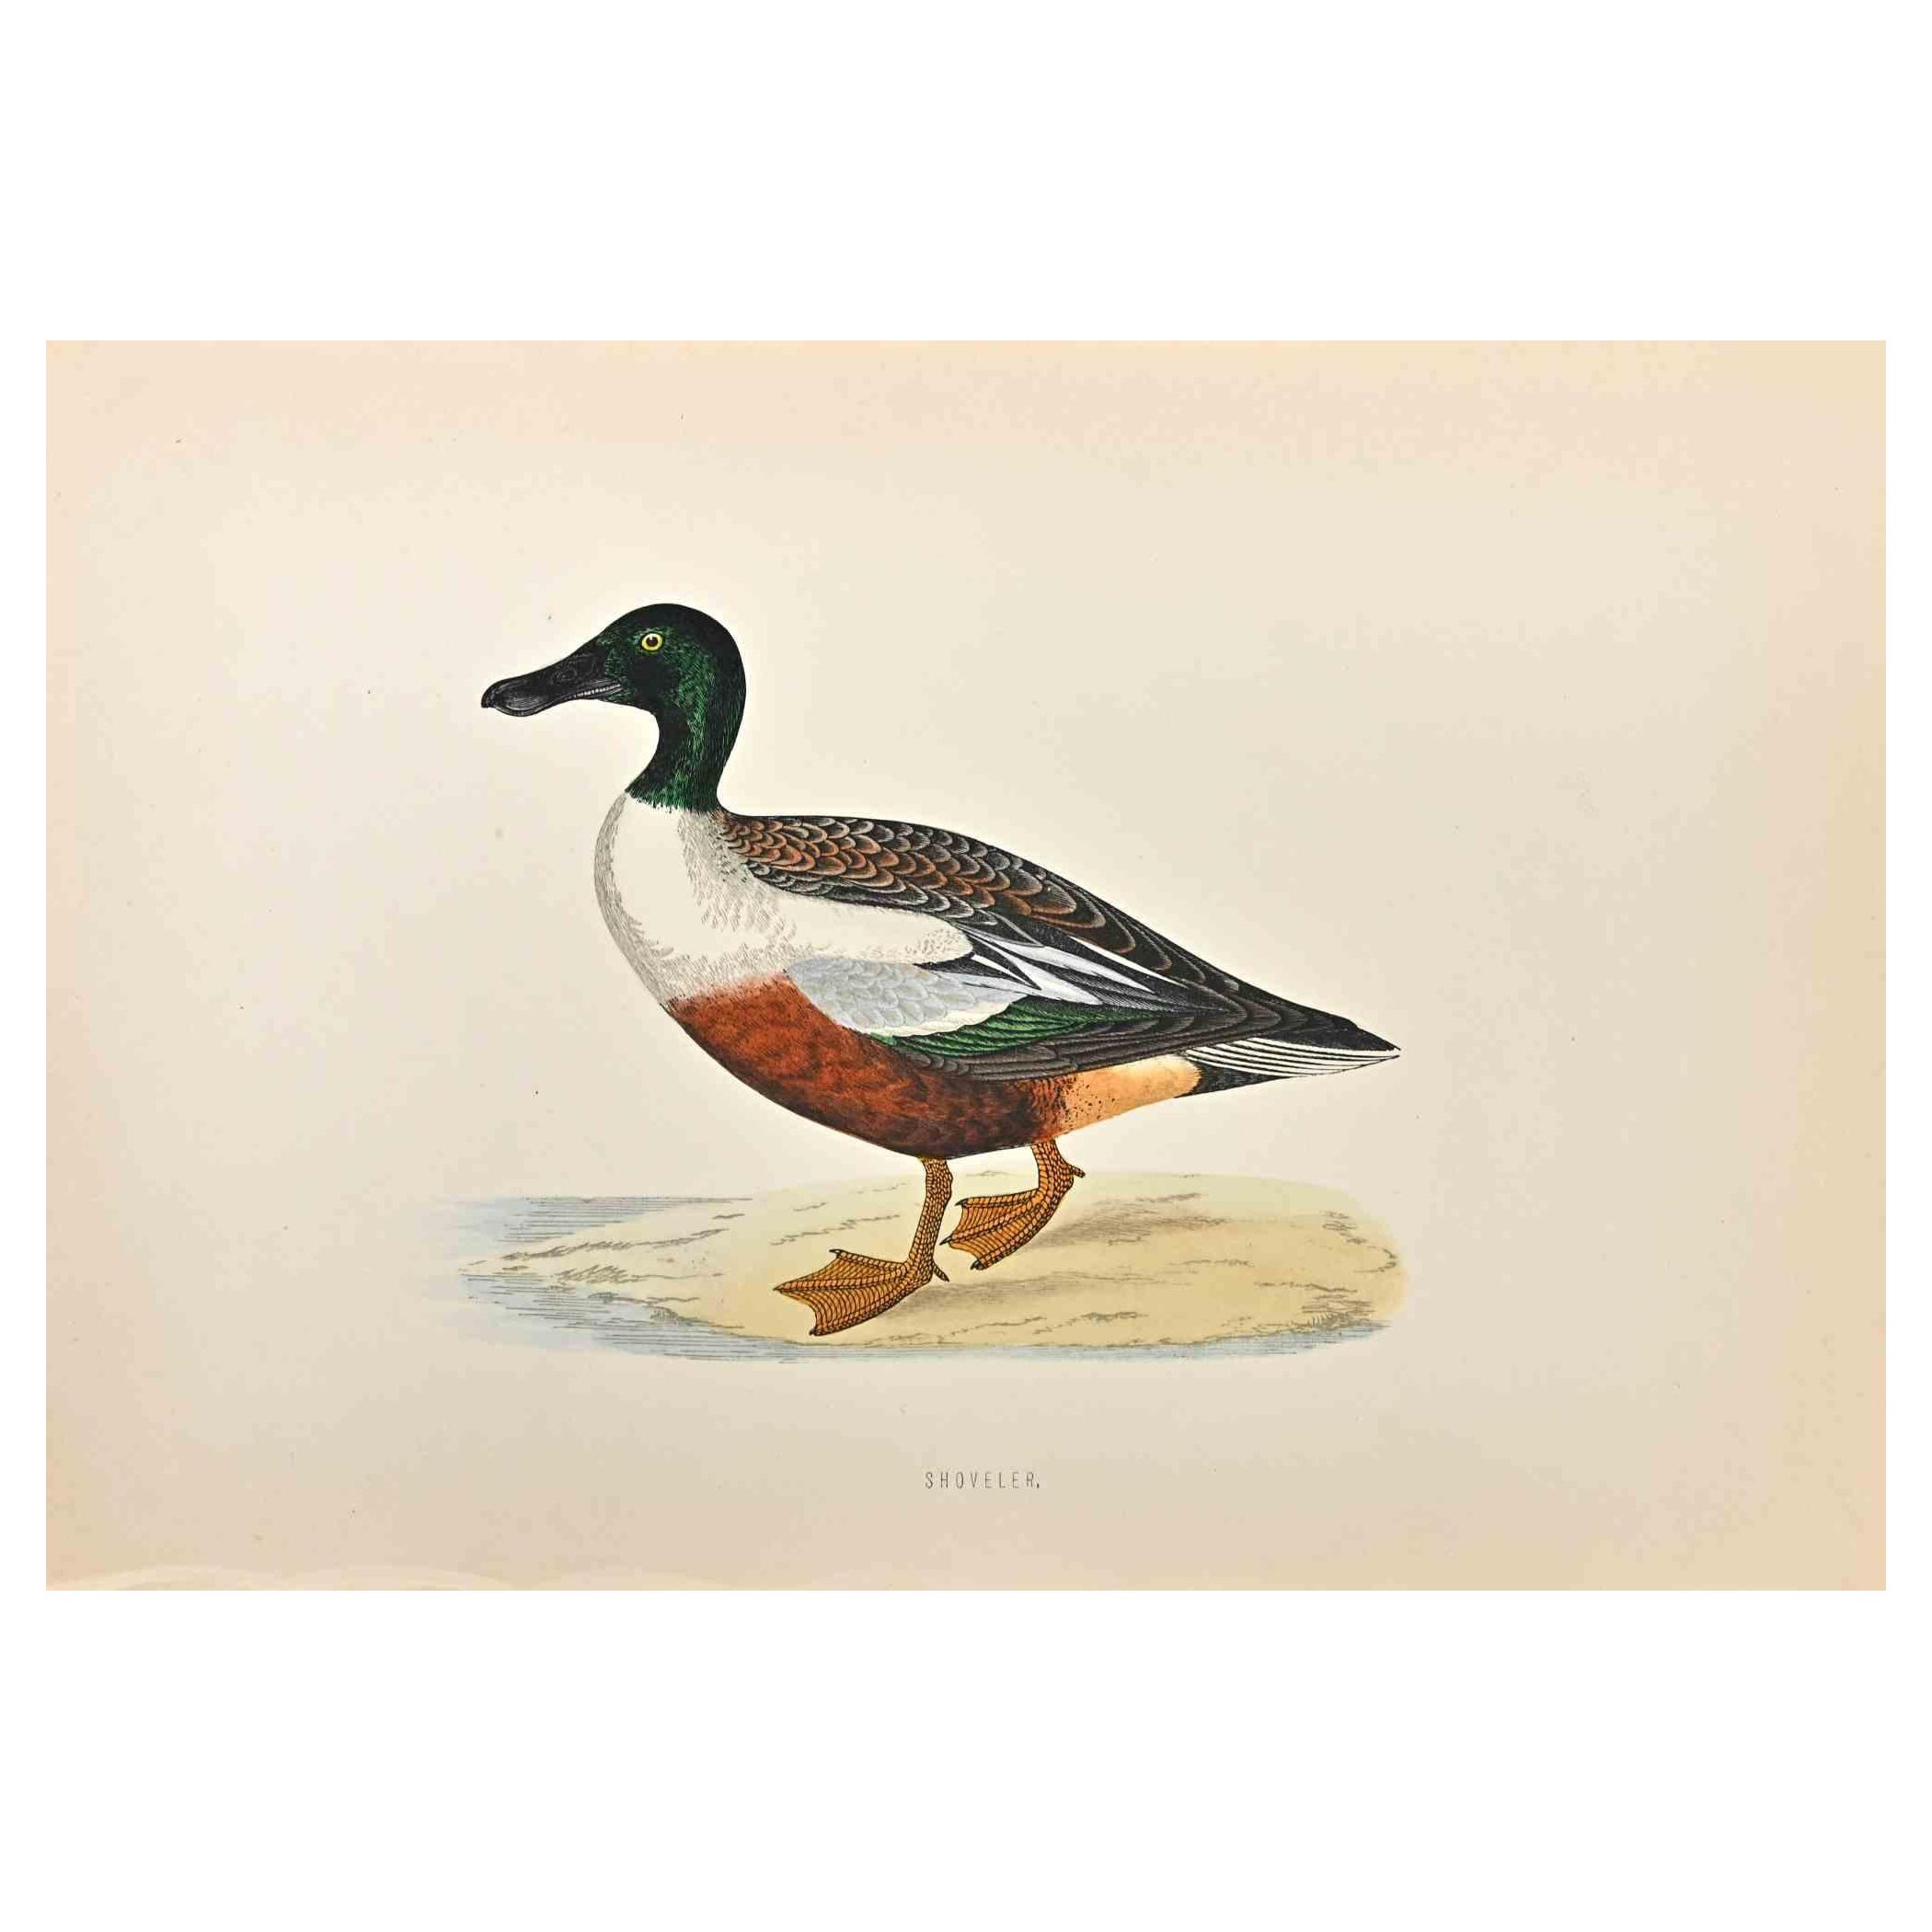 Löffelhund  ist ein modernes Kunstwerk, das 1870 von dem britischen Künstler Alexander Francis Lydon (1836-1917) geschaffen wurde. 

Holzschnitt, handkoloriert, veröffentlicht von London, Bell & Sons, 1870.  Name des Vogels in der Platte gedruckt.